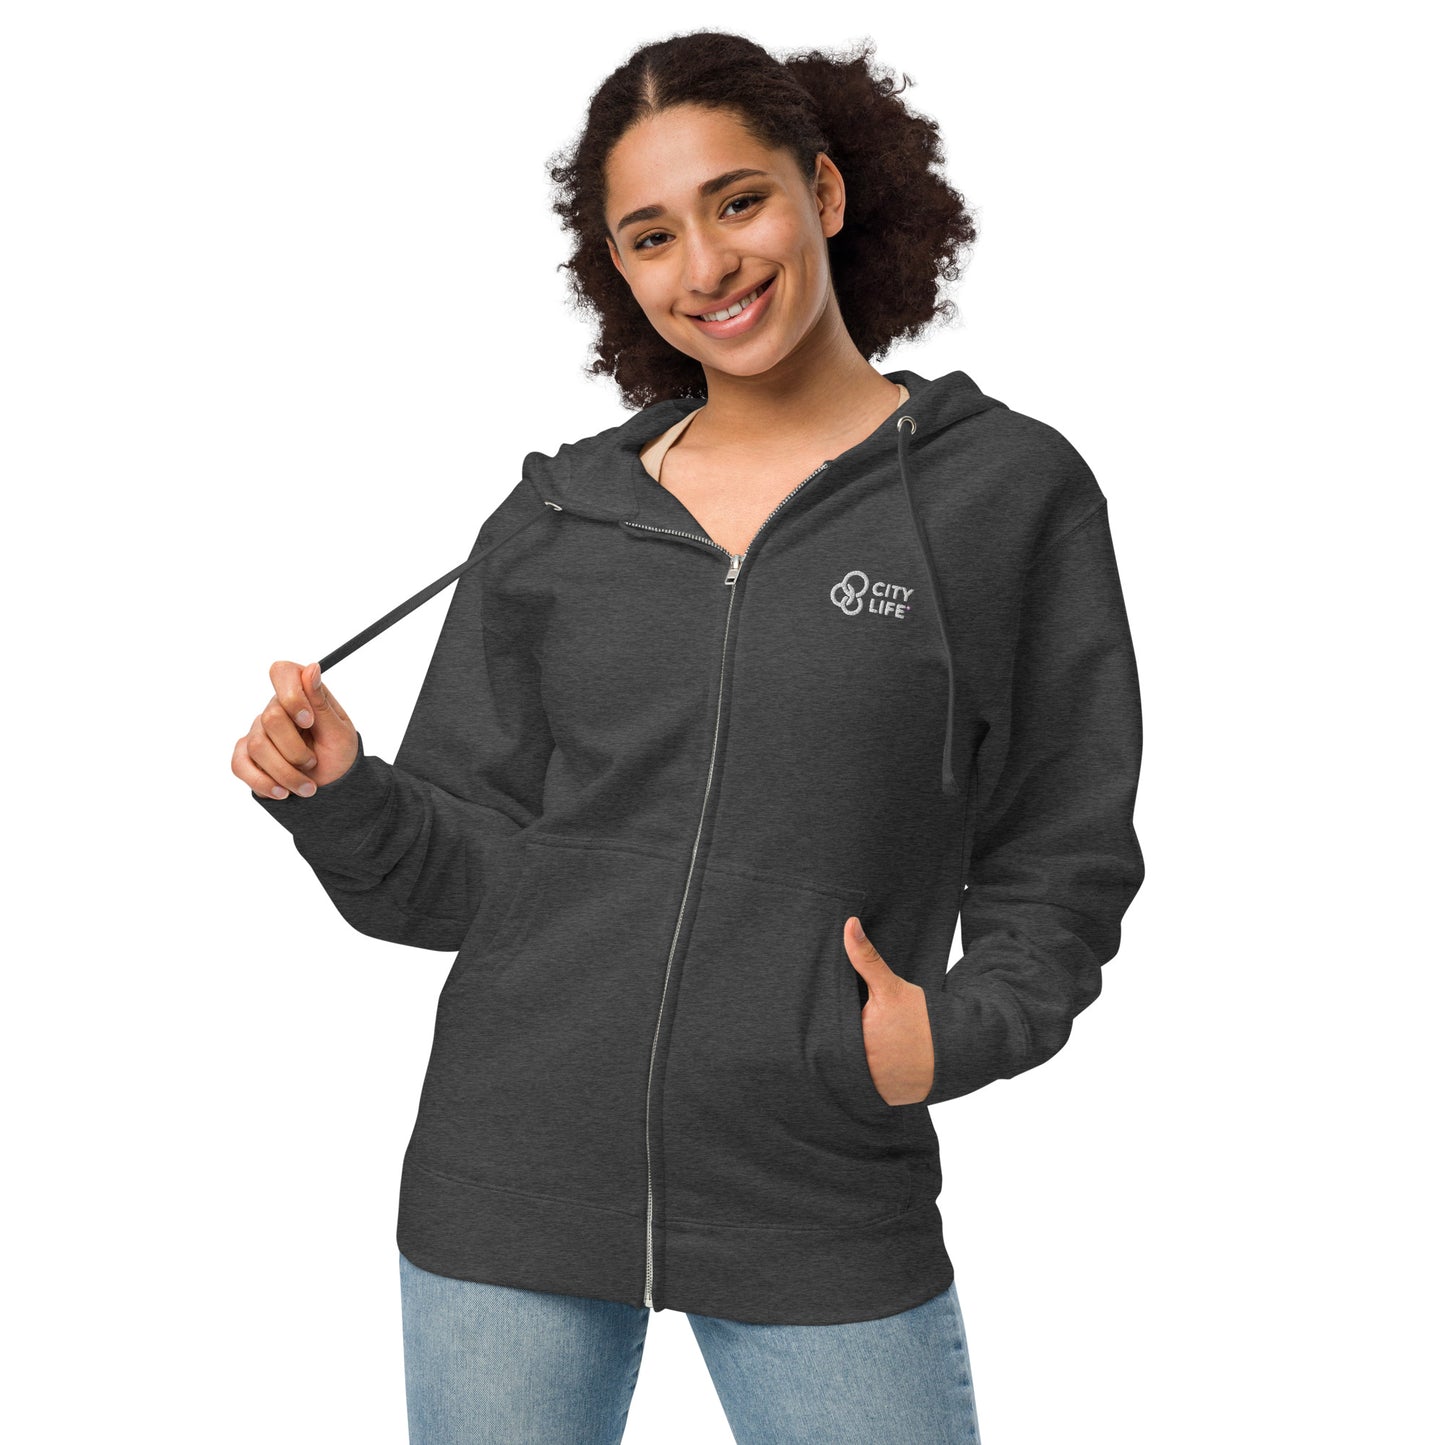 City Life Unisex fleece zip up hoodie